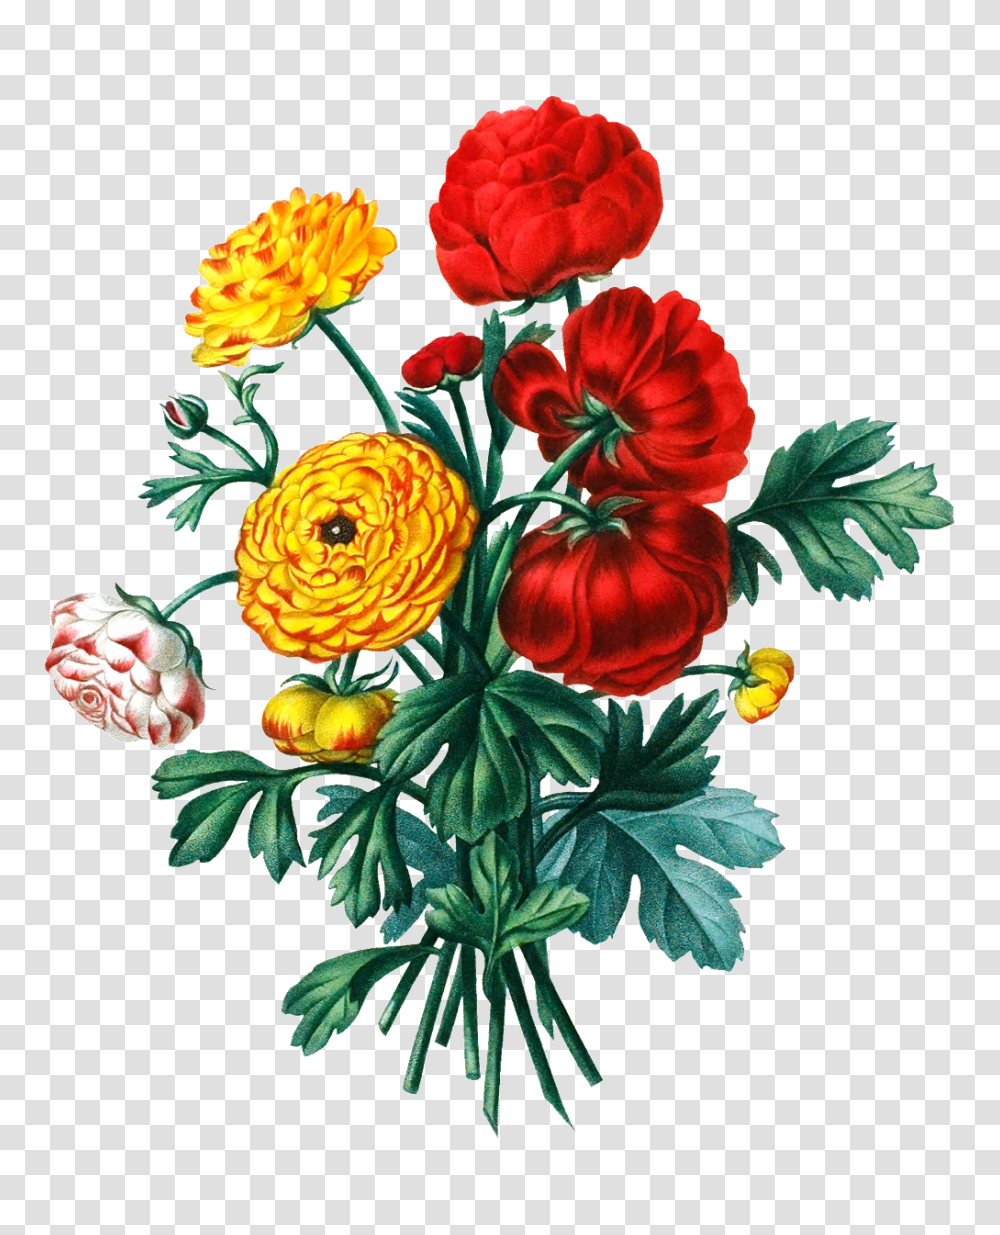 Color Hd Flower Bouquet Physical Elements Free Download, Plant, Floral Design Transparent Png